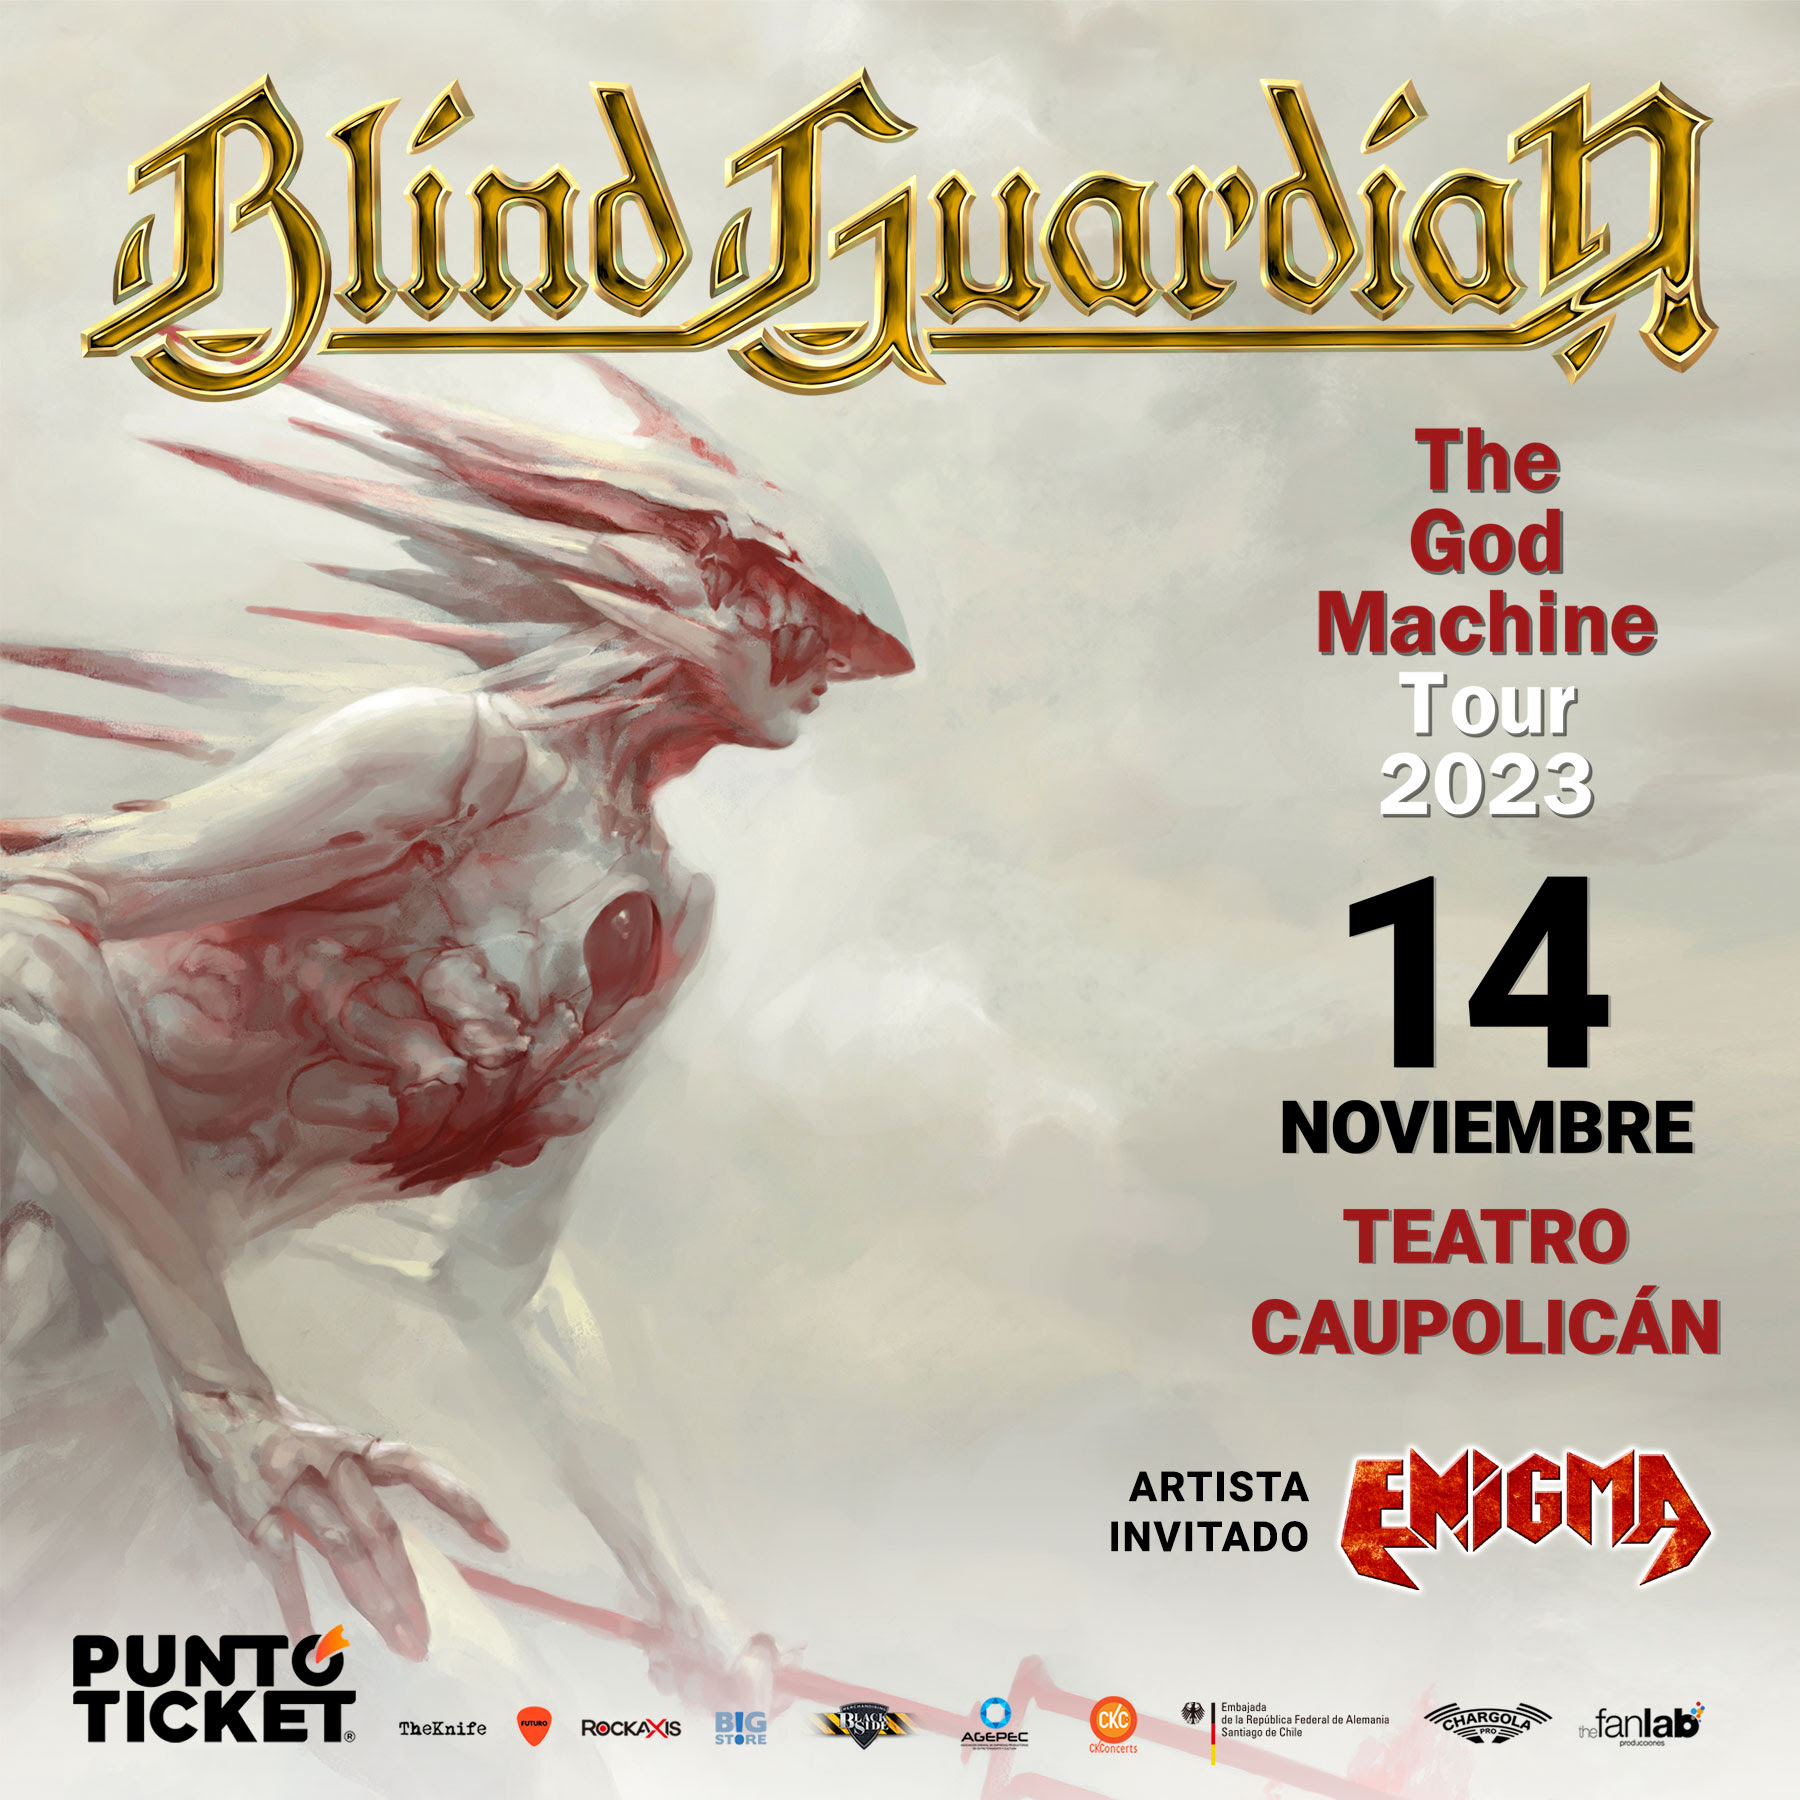 Enigma abrirá show de Blind Guardian en Chile